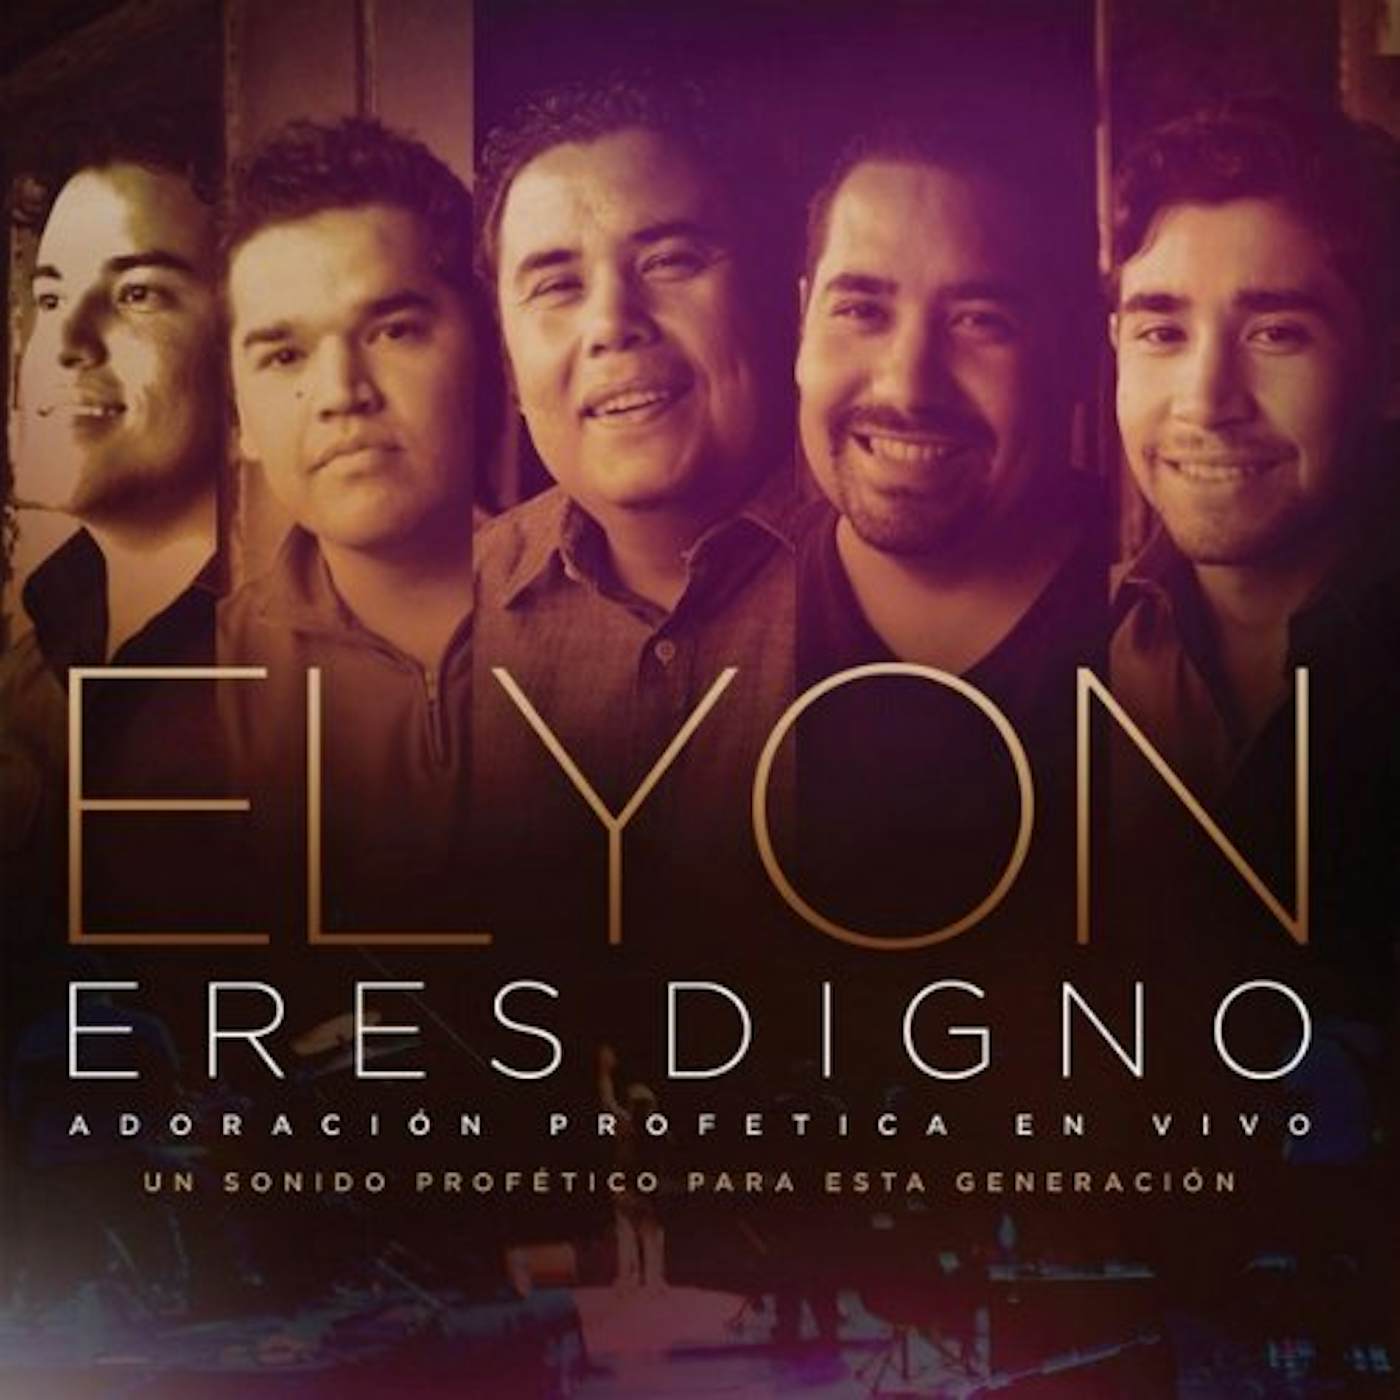 Elyon ERES DIGNO CD